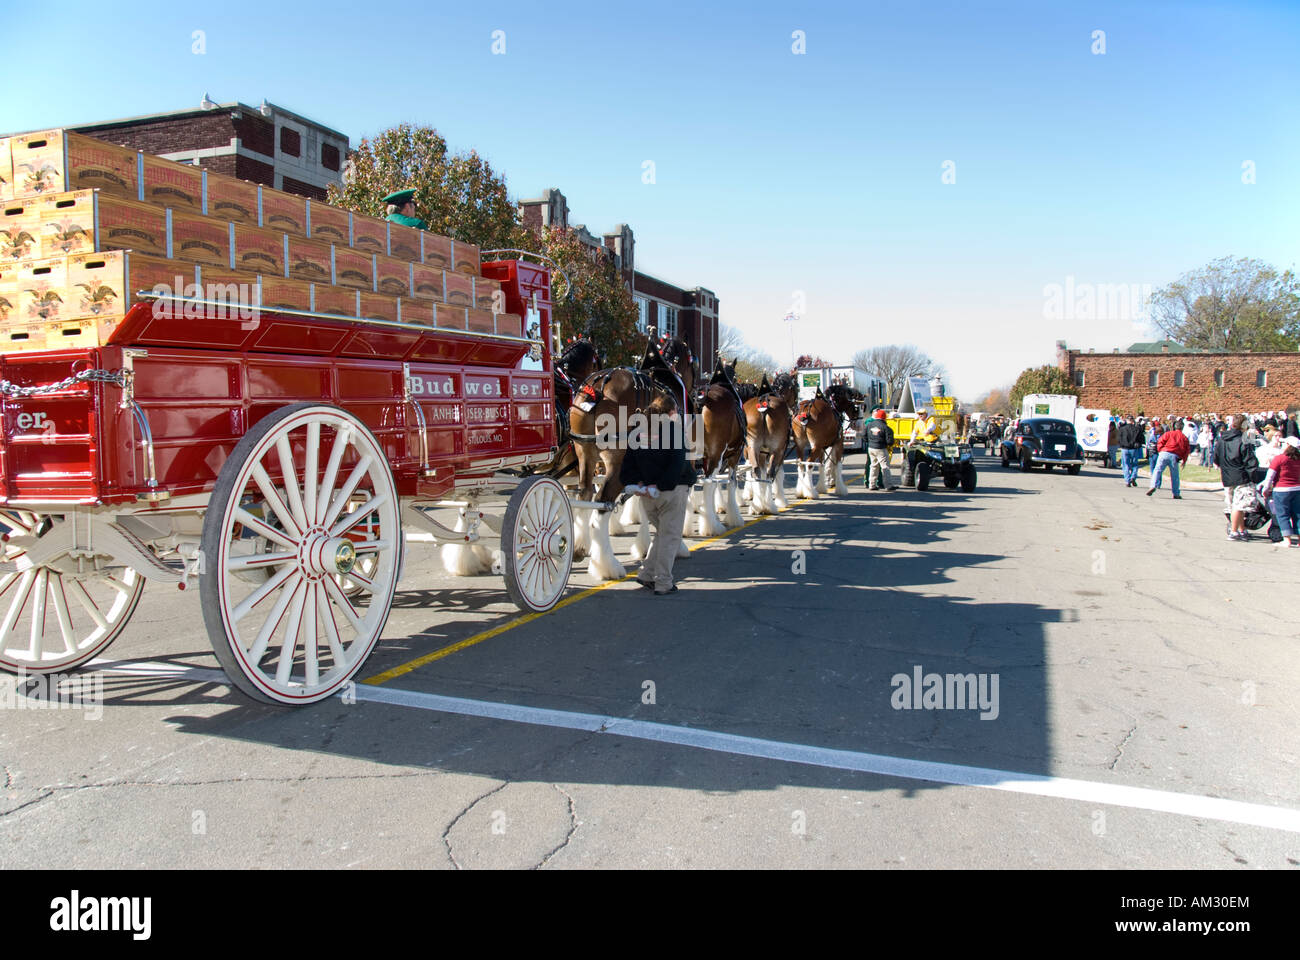 Ein Budweiser Bier Wagen von Clydesdale Pferden gezogen. Centennial Parade, Guthrie, Oklahoma. Stockfoto